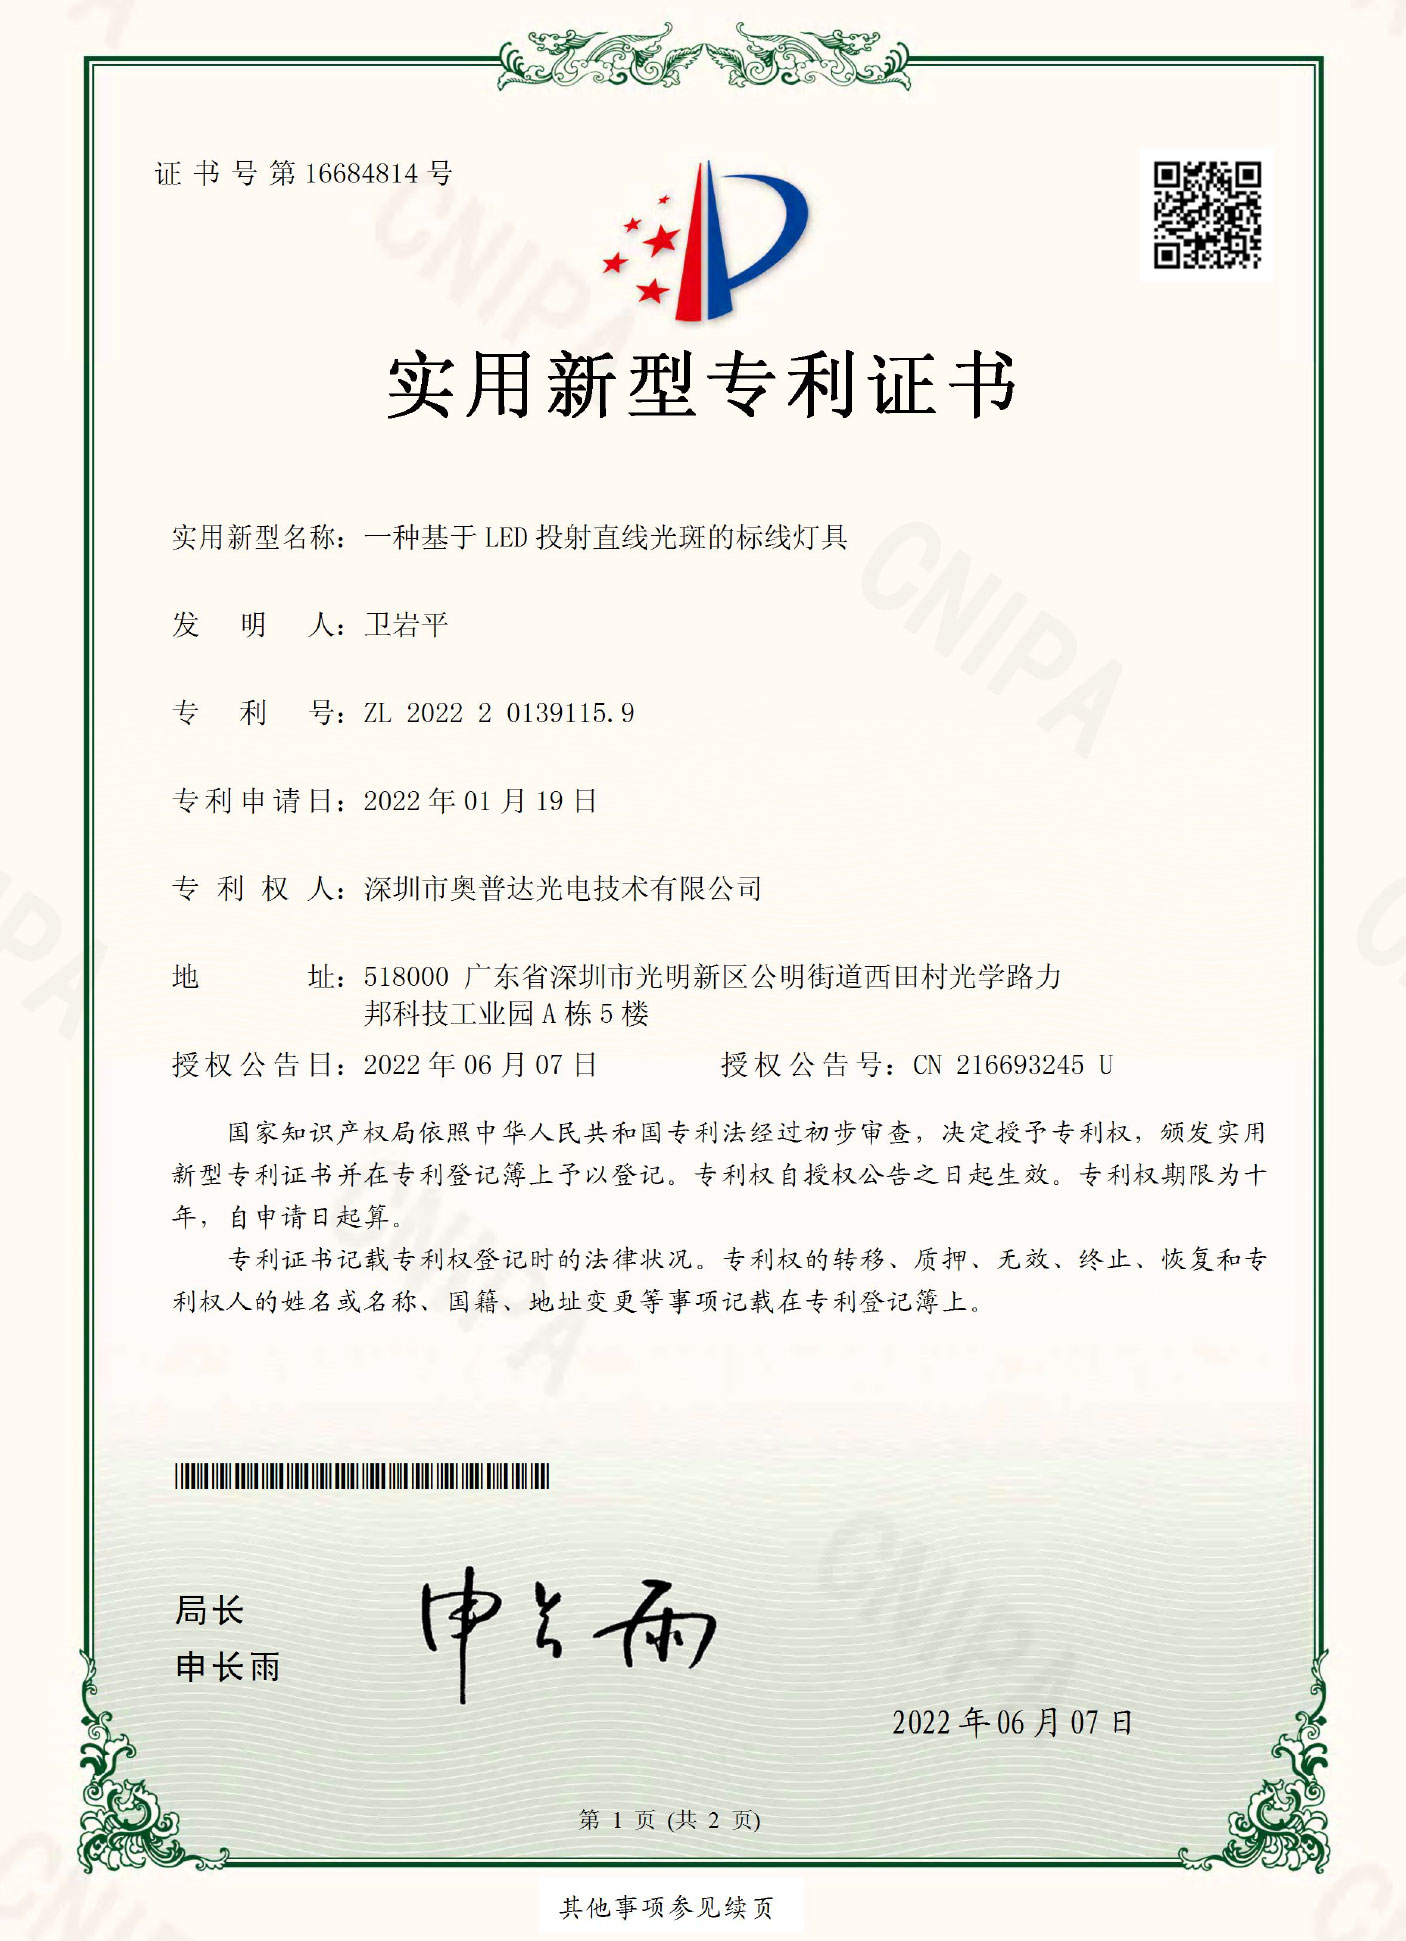 深圳市奥普达光电技术有限公司-2022201391159-实用新型专利证书(签章)